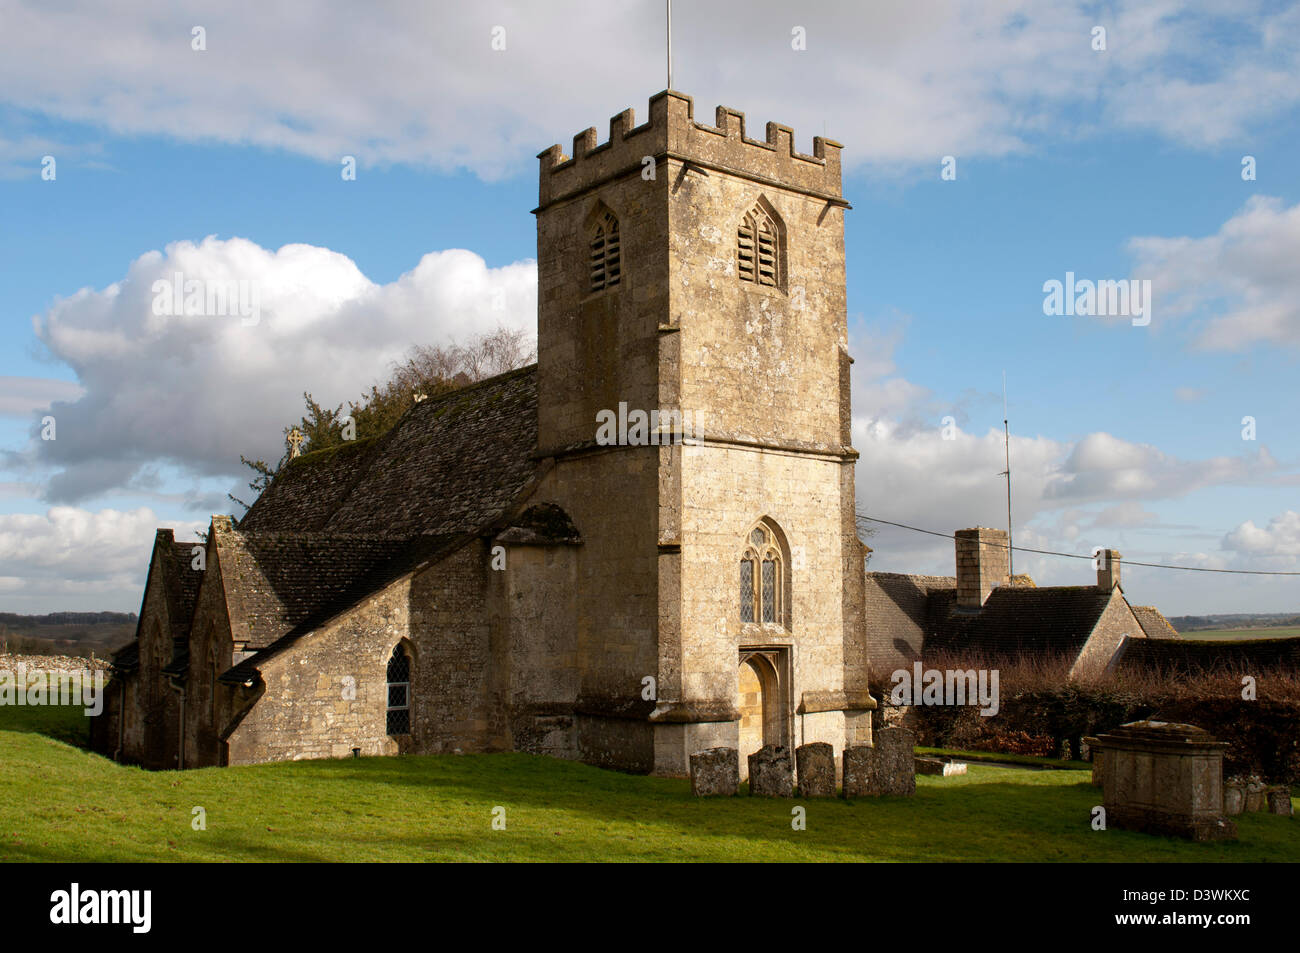 Eglise de Saint-André, Hazleton, Gloucestershire, England, UK Banque D'Images